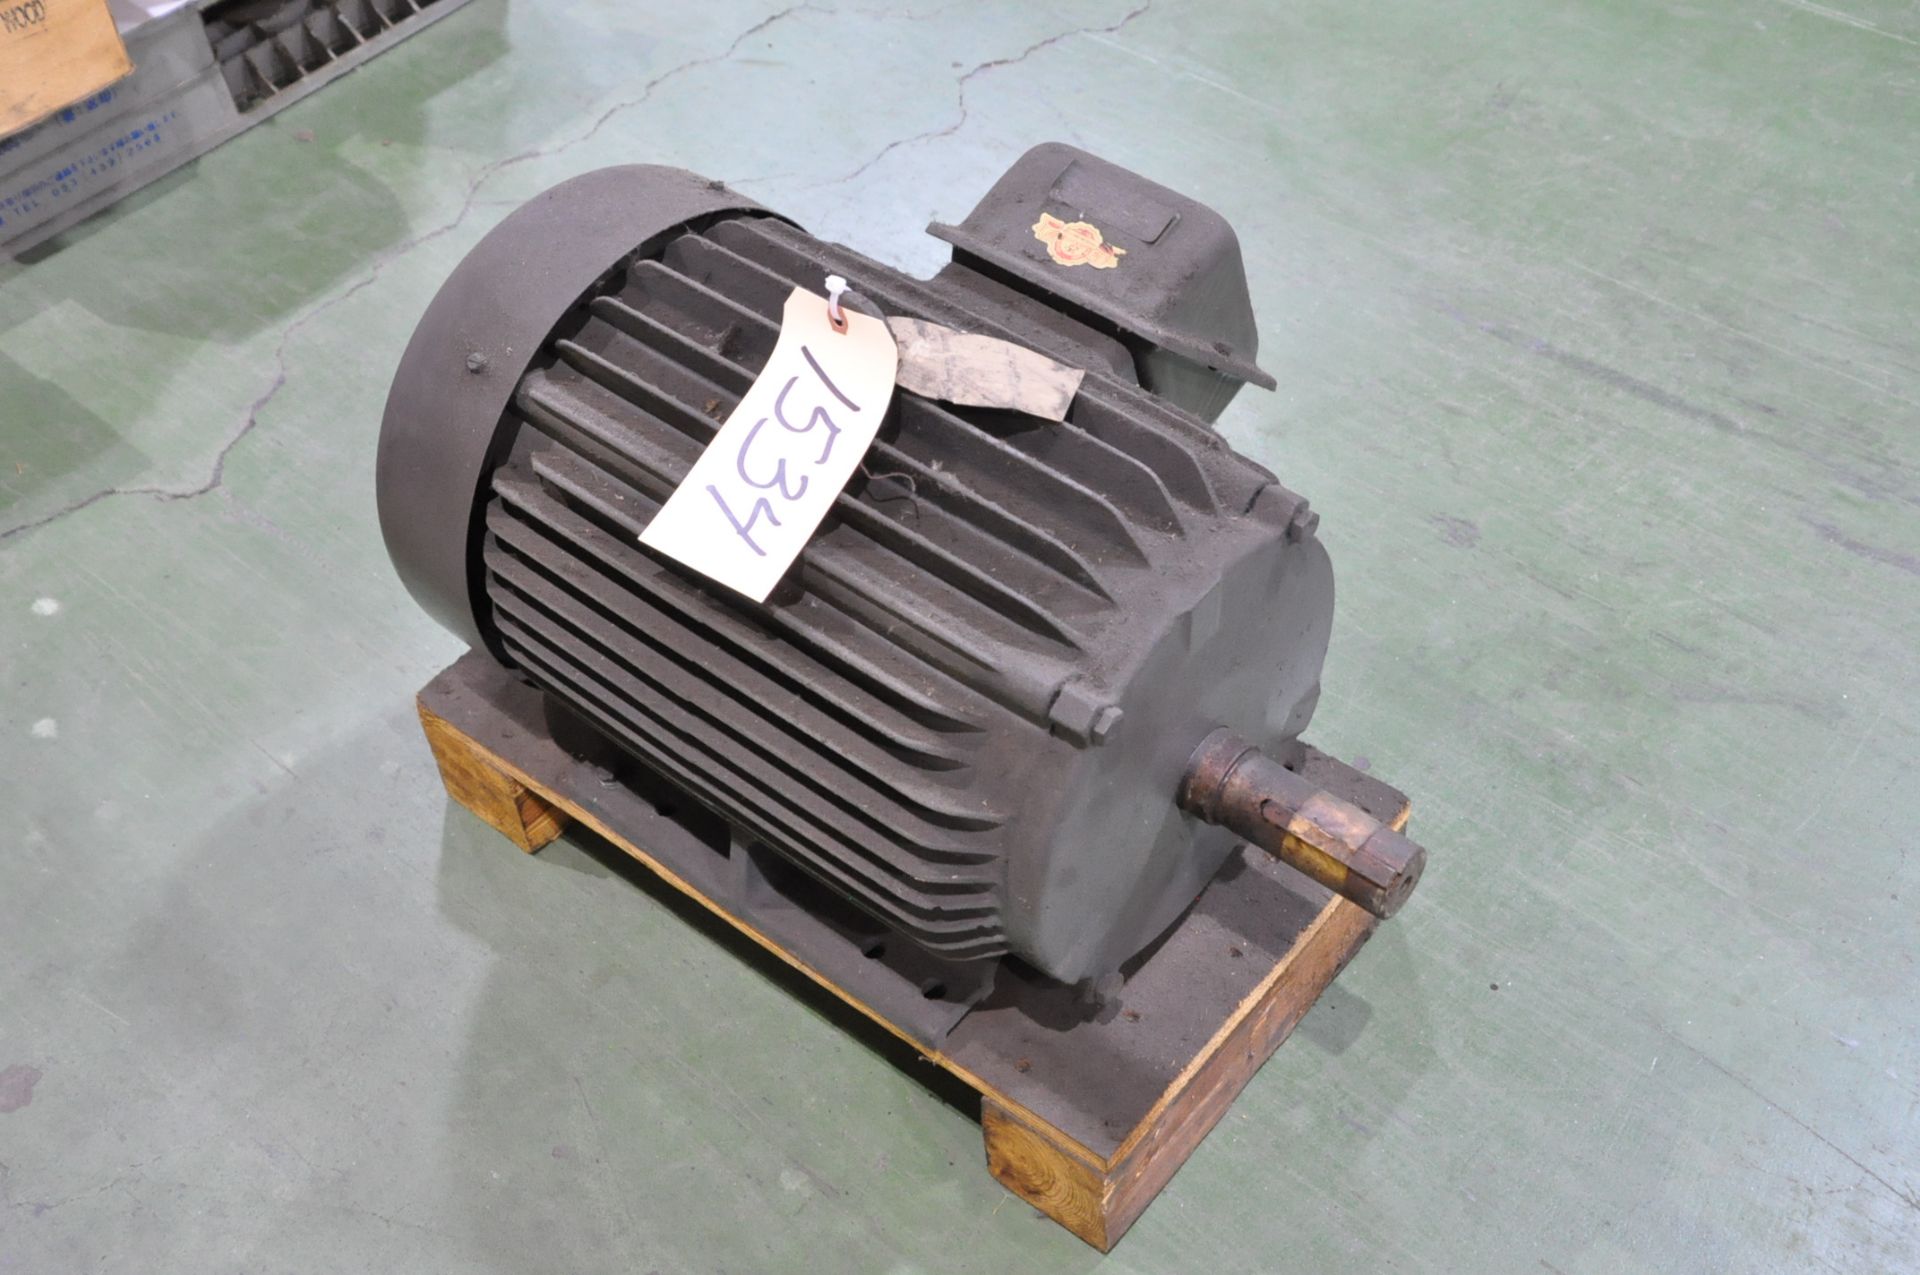 Magnetek 15-HP 3-PH Motor on (1) Pallet, (E-4)